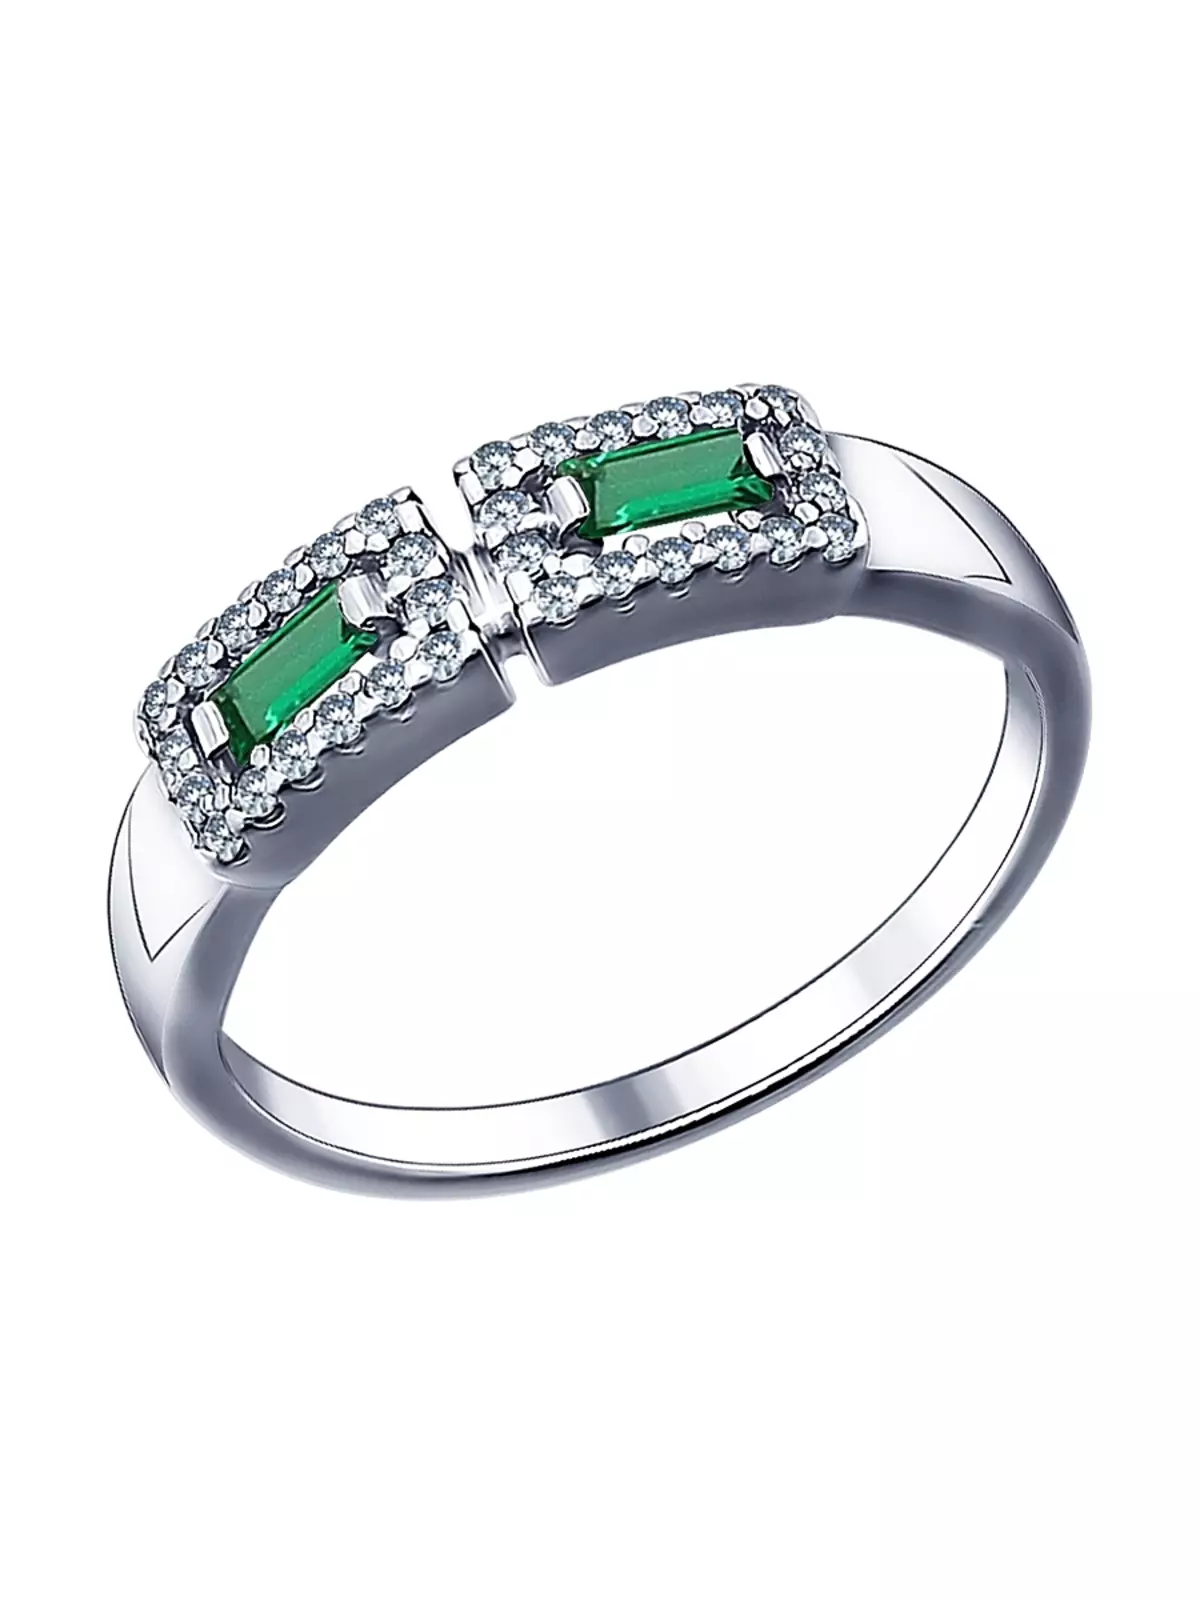 ग्रेनेड (72 फोटो) के साथ अंगूठी: बड़े और छोटे पत्थर के साथ, हरे ग्रेनेड और शिज़िया के साथ सोने और चांदी 3118_58